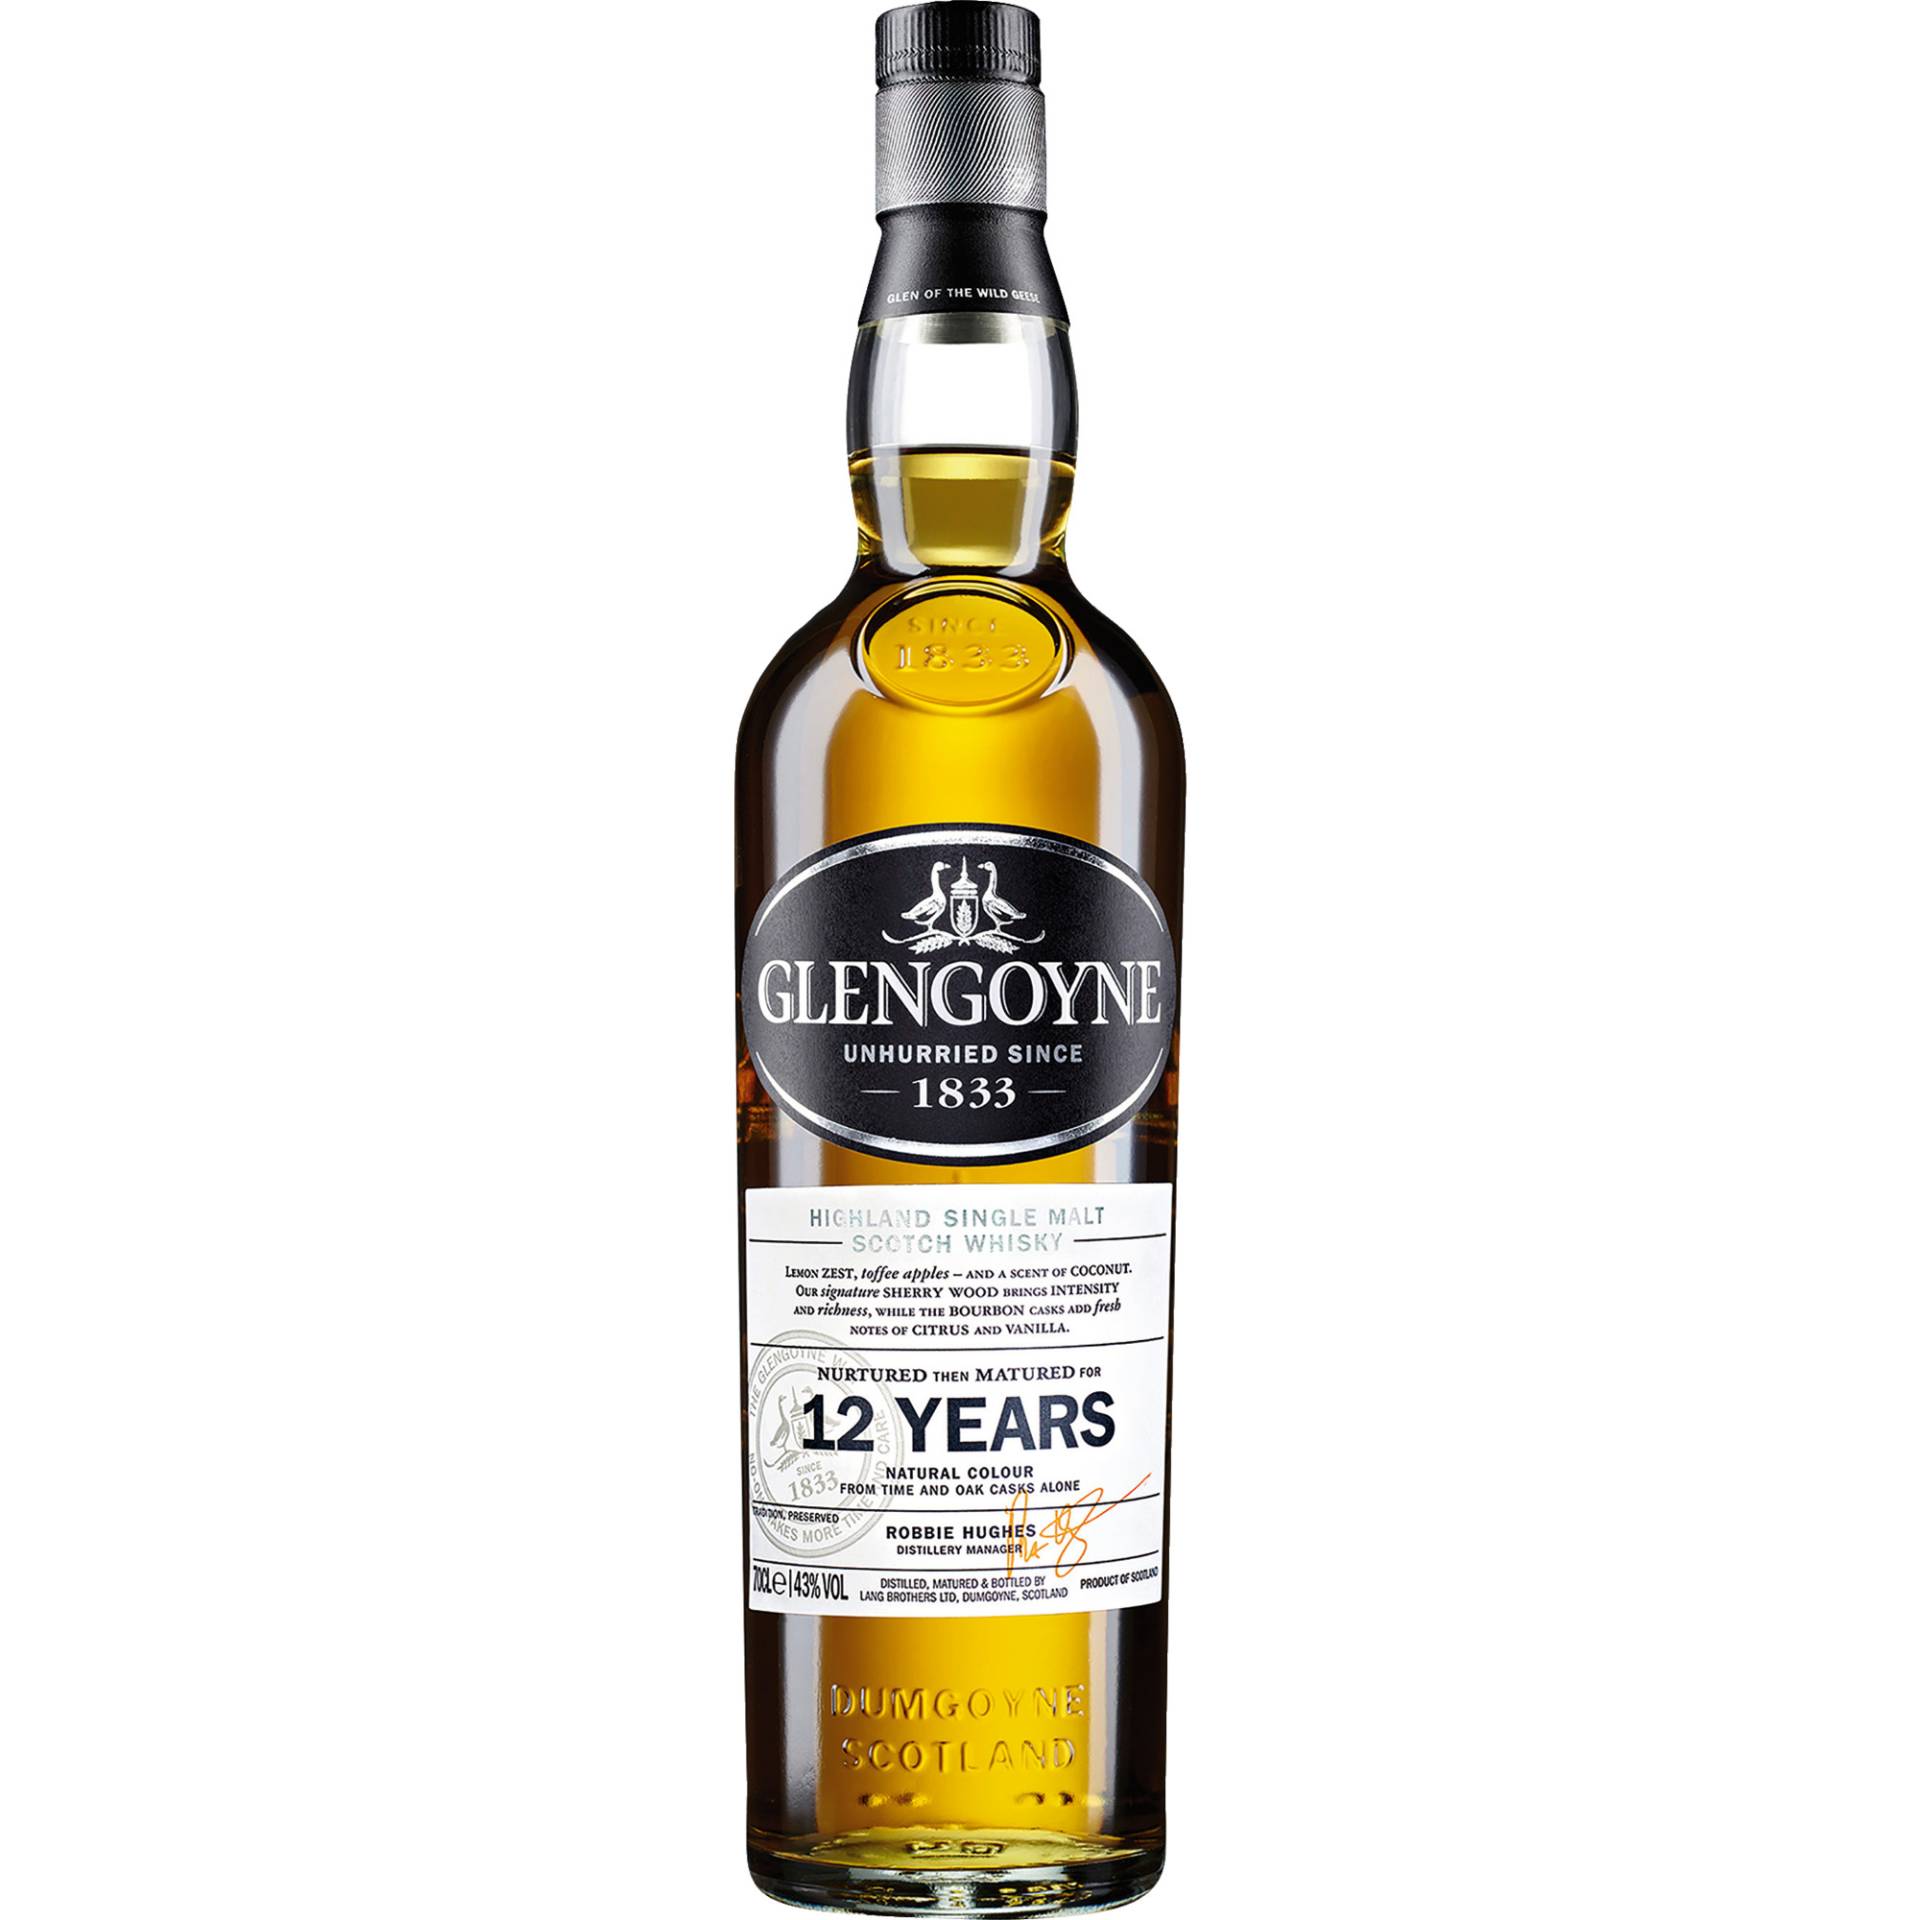 Glengoyne 12 YO Scotch Whisky, 0,7l, 43 % Vol., Schottland, Spirituosen von Ian Macleod Distilleries Ltd., Great Britain